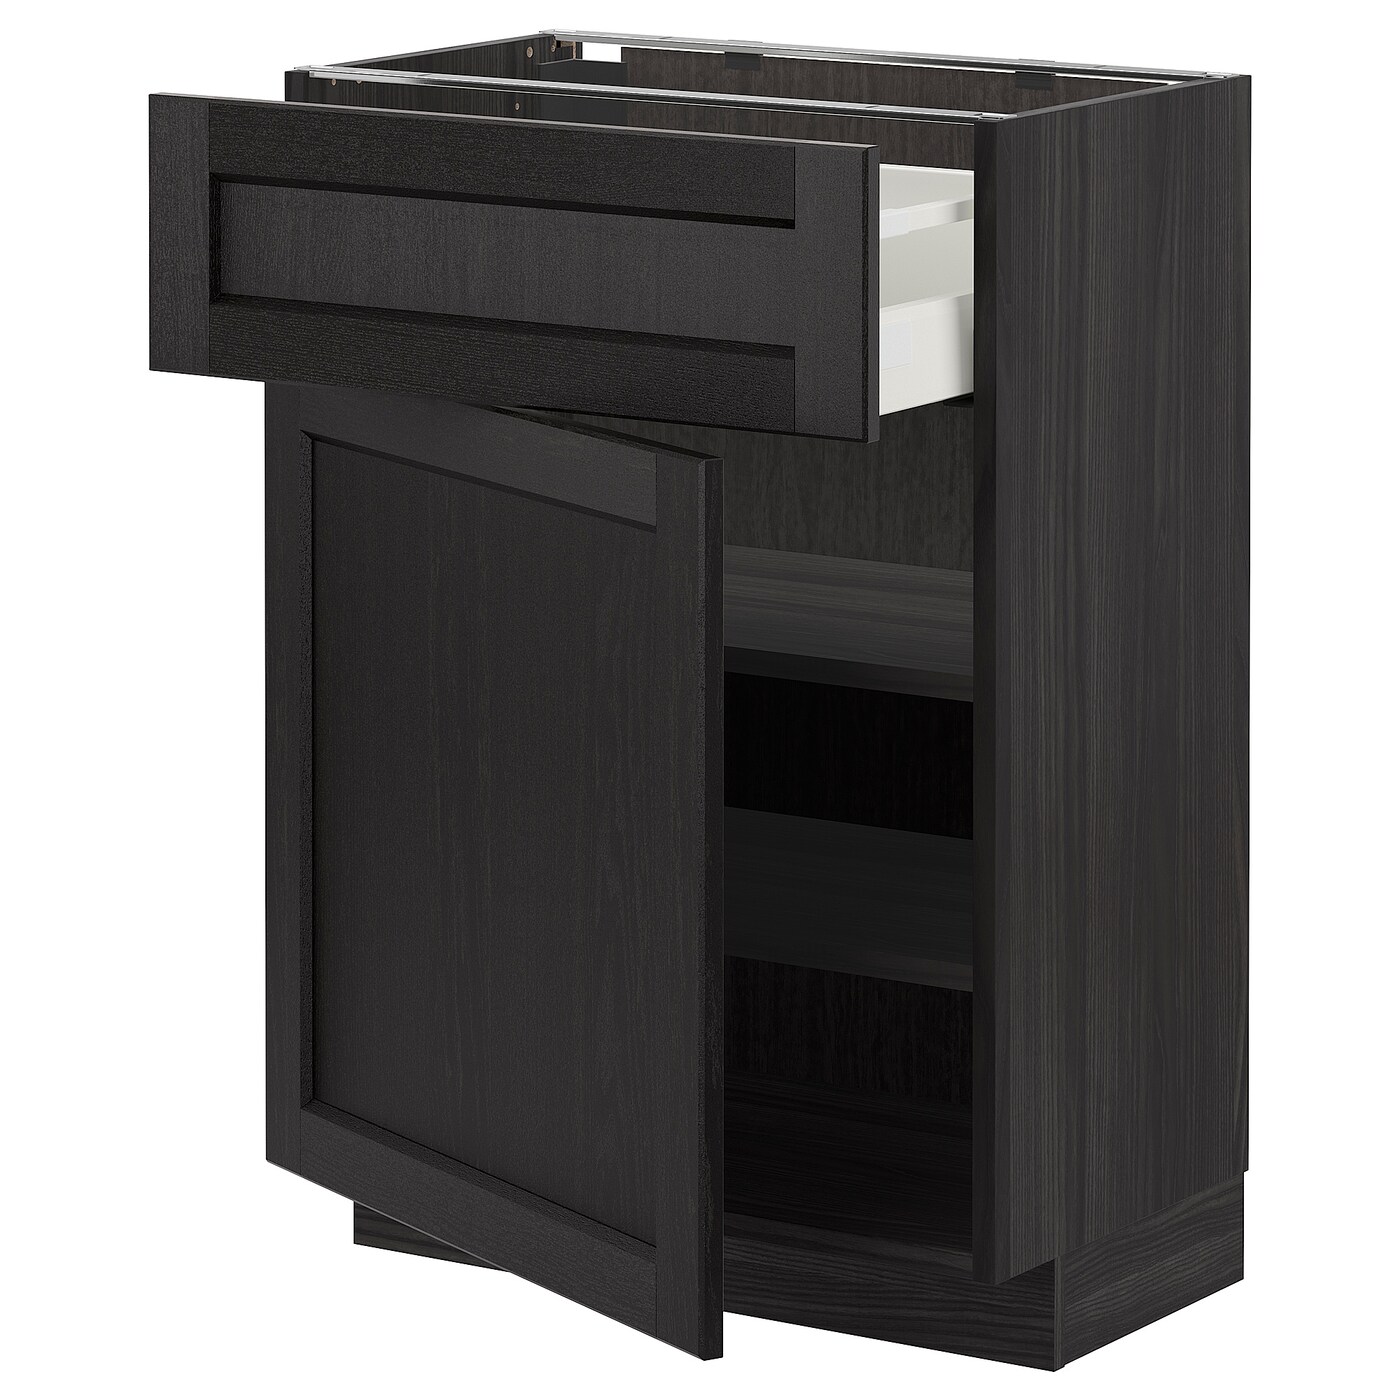 Напольный шкаф - METOD / MAXIMERA IKEA/ МЕТОД/ МАКСИМЕРА ИКЕА,  60х88 см, коричневый